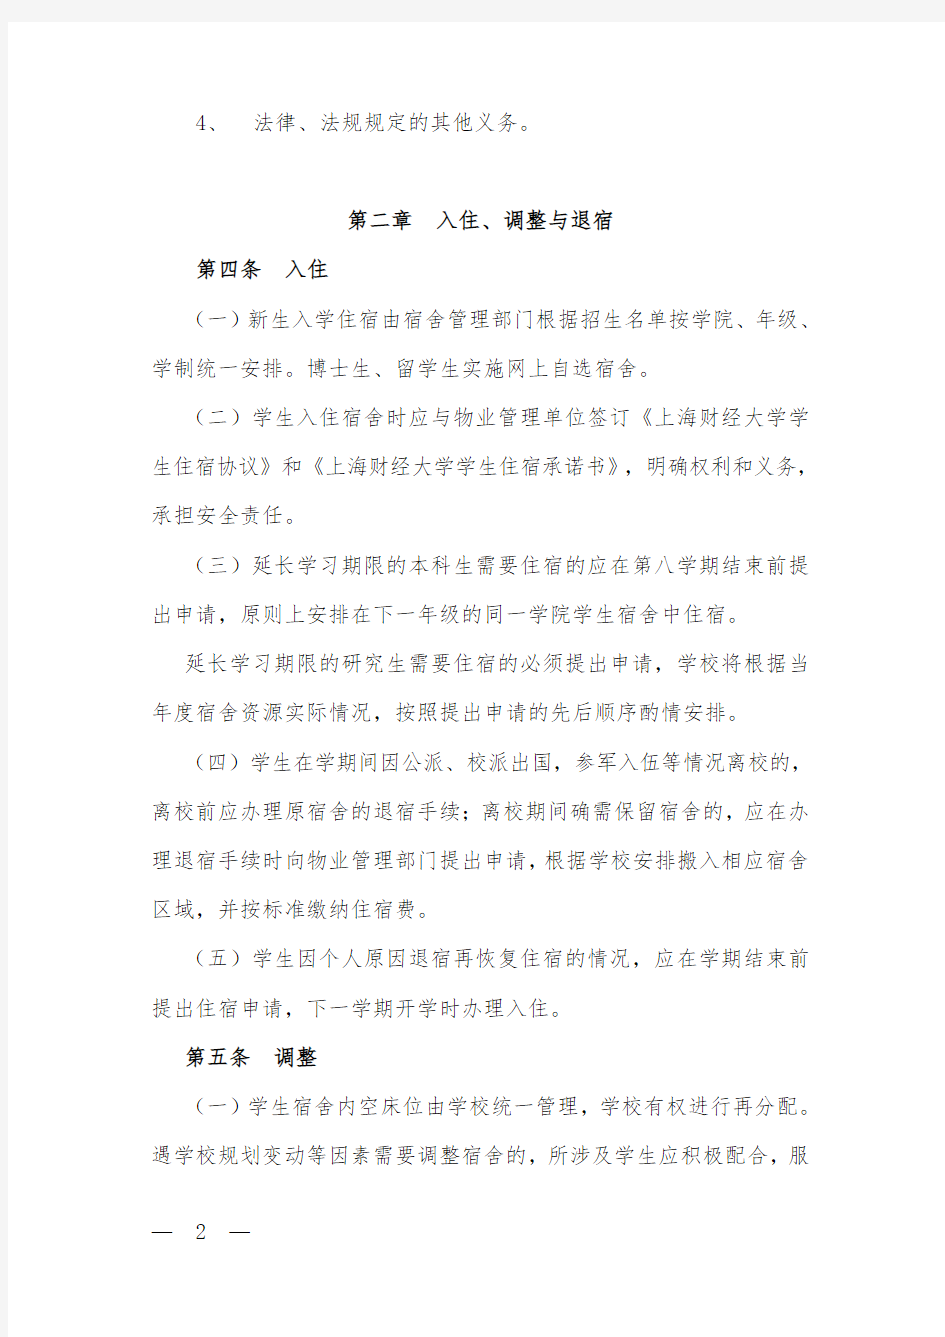 上海财经大学学生宿舍管理办法